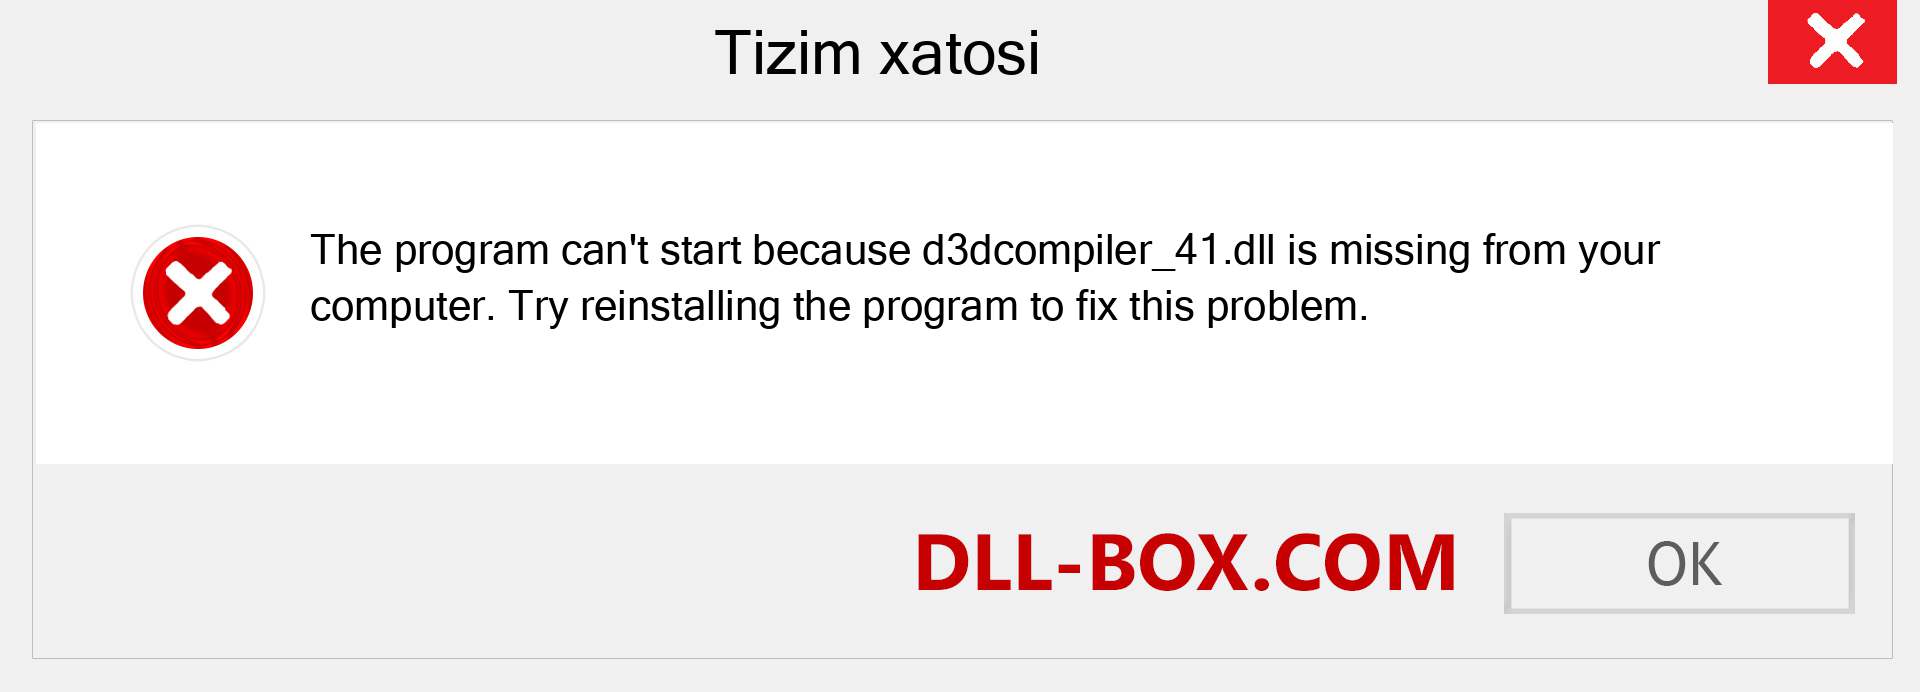 d3dcompiler_41.dll fayli yo'qolganmi?. Windows 7, 8, 10 uchun yuklab olish - Windowsda d3dcompiler_41 dll etishmayotgan xatoni tuzating, rasmlar, rasmlar